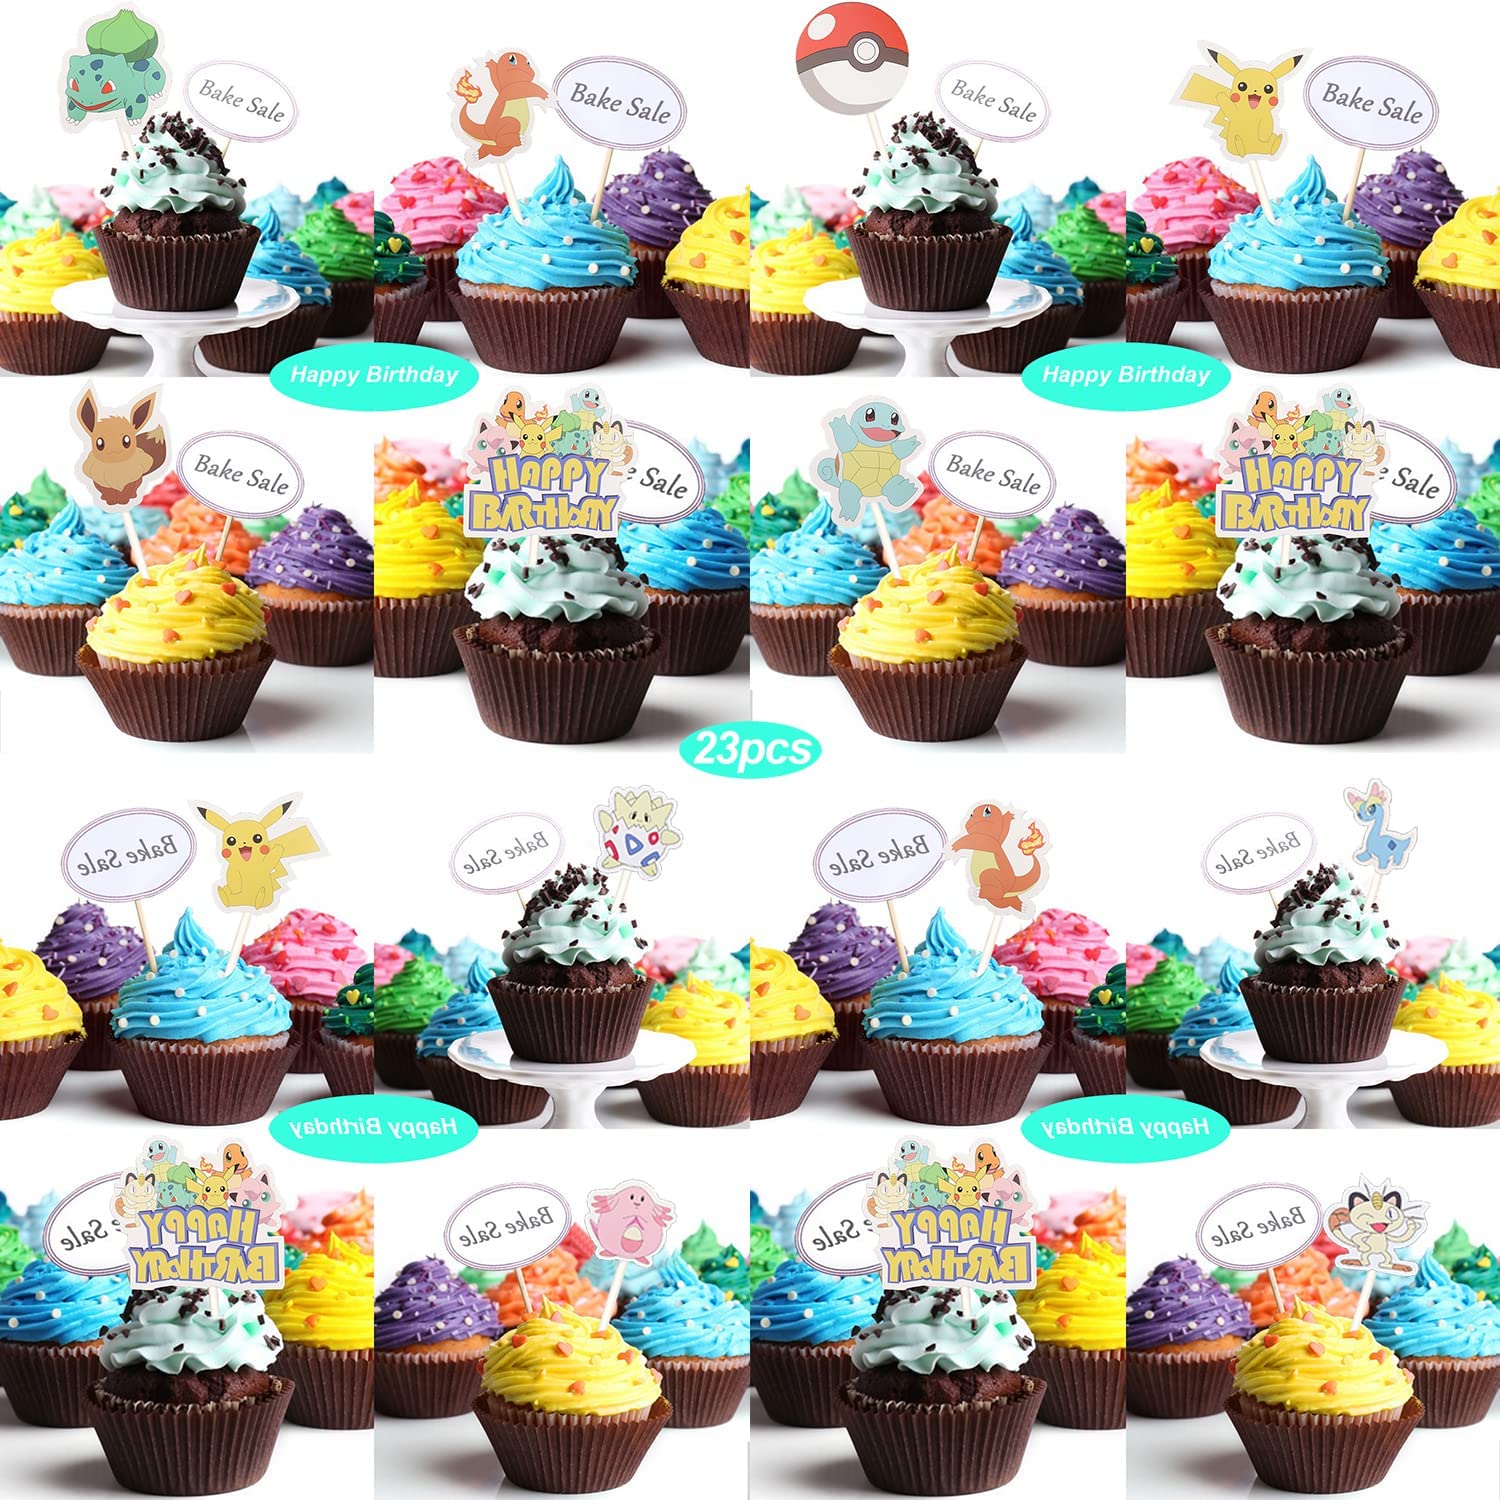 Pokemon 31 st delar, födelsedagsdekoration, ballonger, spel, födelsedag, dekorationsset för roblox, tema, fest, födelsedagsfest, pojke, barn, födelsedagsdekoration